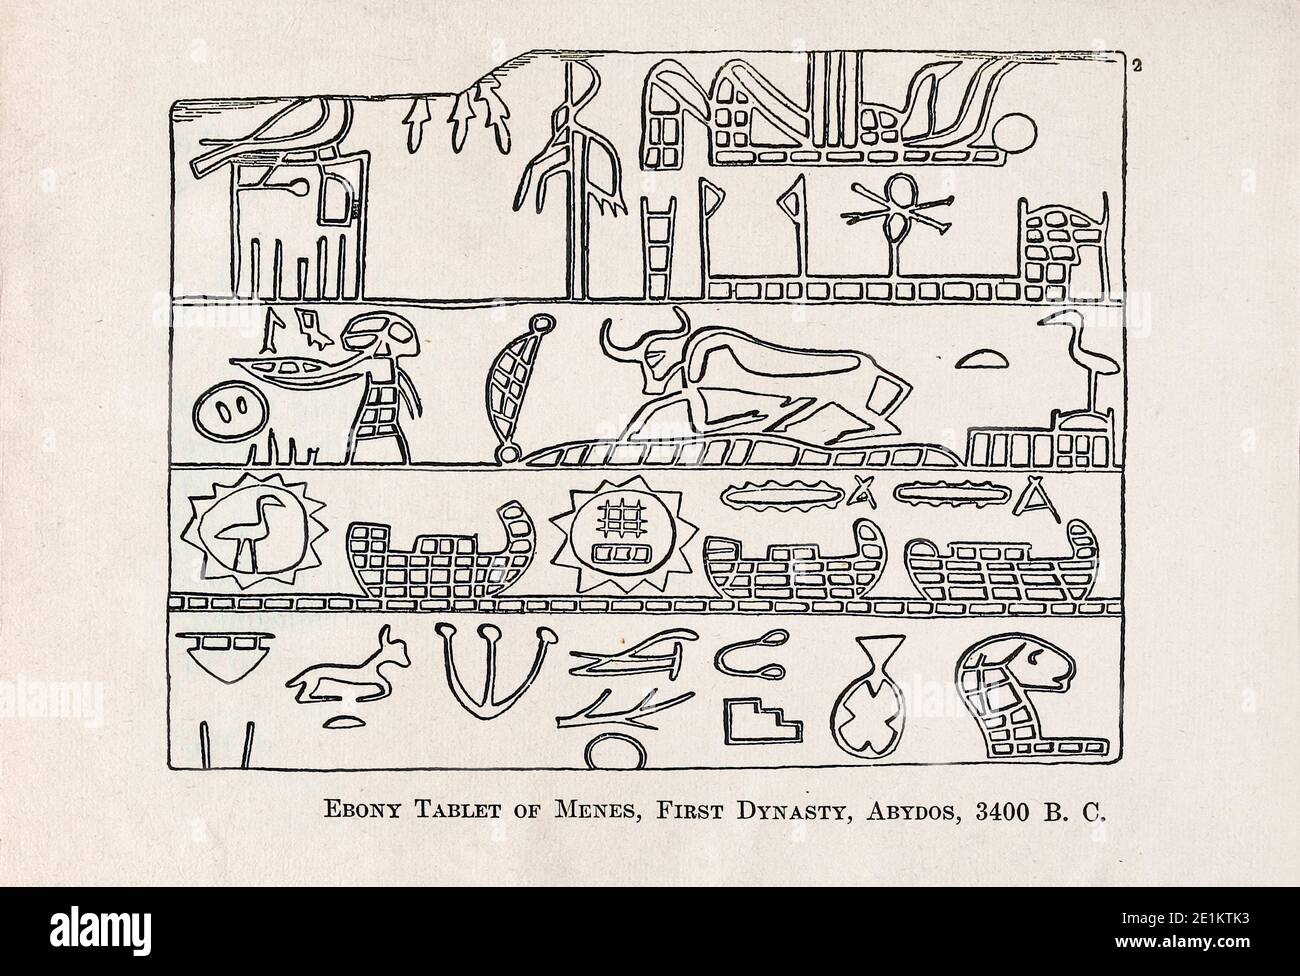 Gravure de l'Égypte ancienne. Ebony Tablet of Menes, première dynastie, Abydos, 3400 B. C, un des plus anciens exemples connus de hiéroglyphes. Rangée supérieure : à Banque D'Images